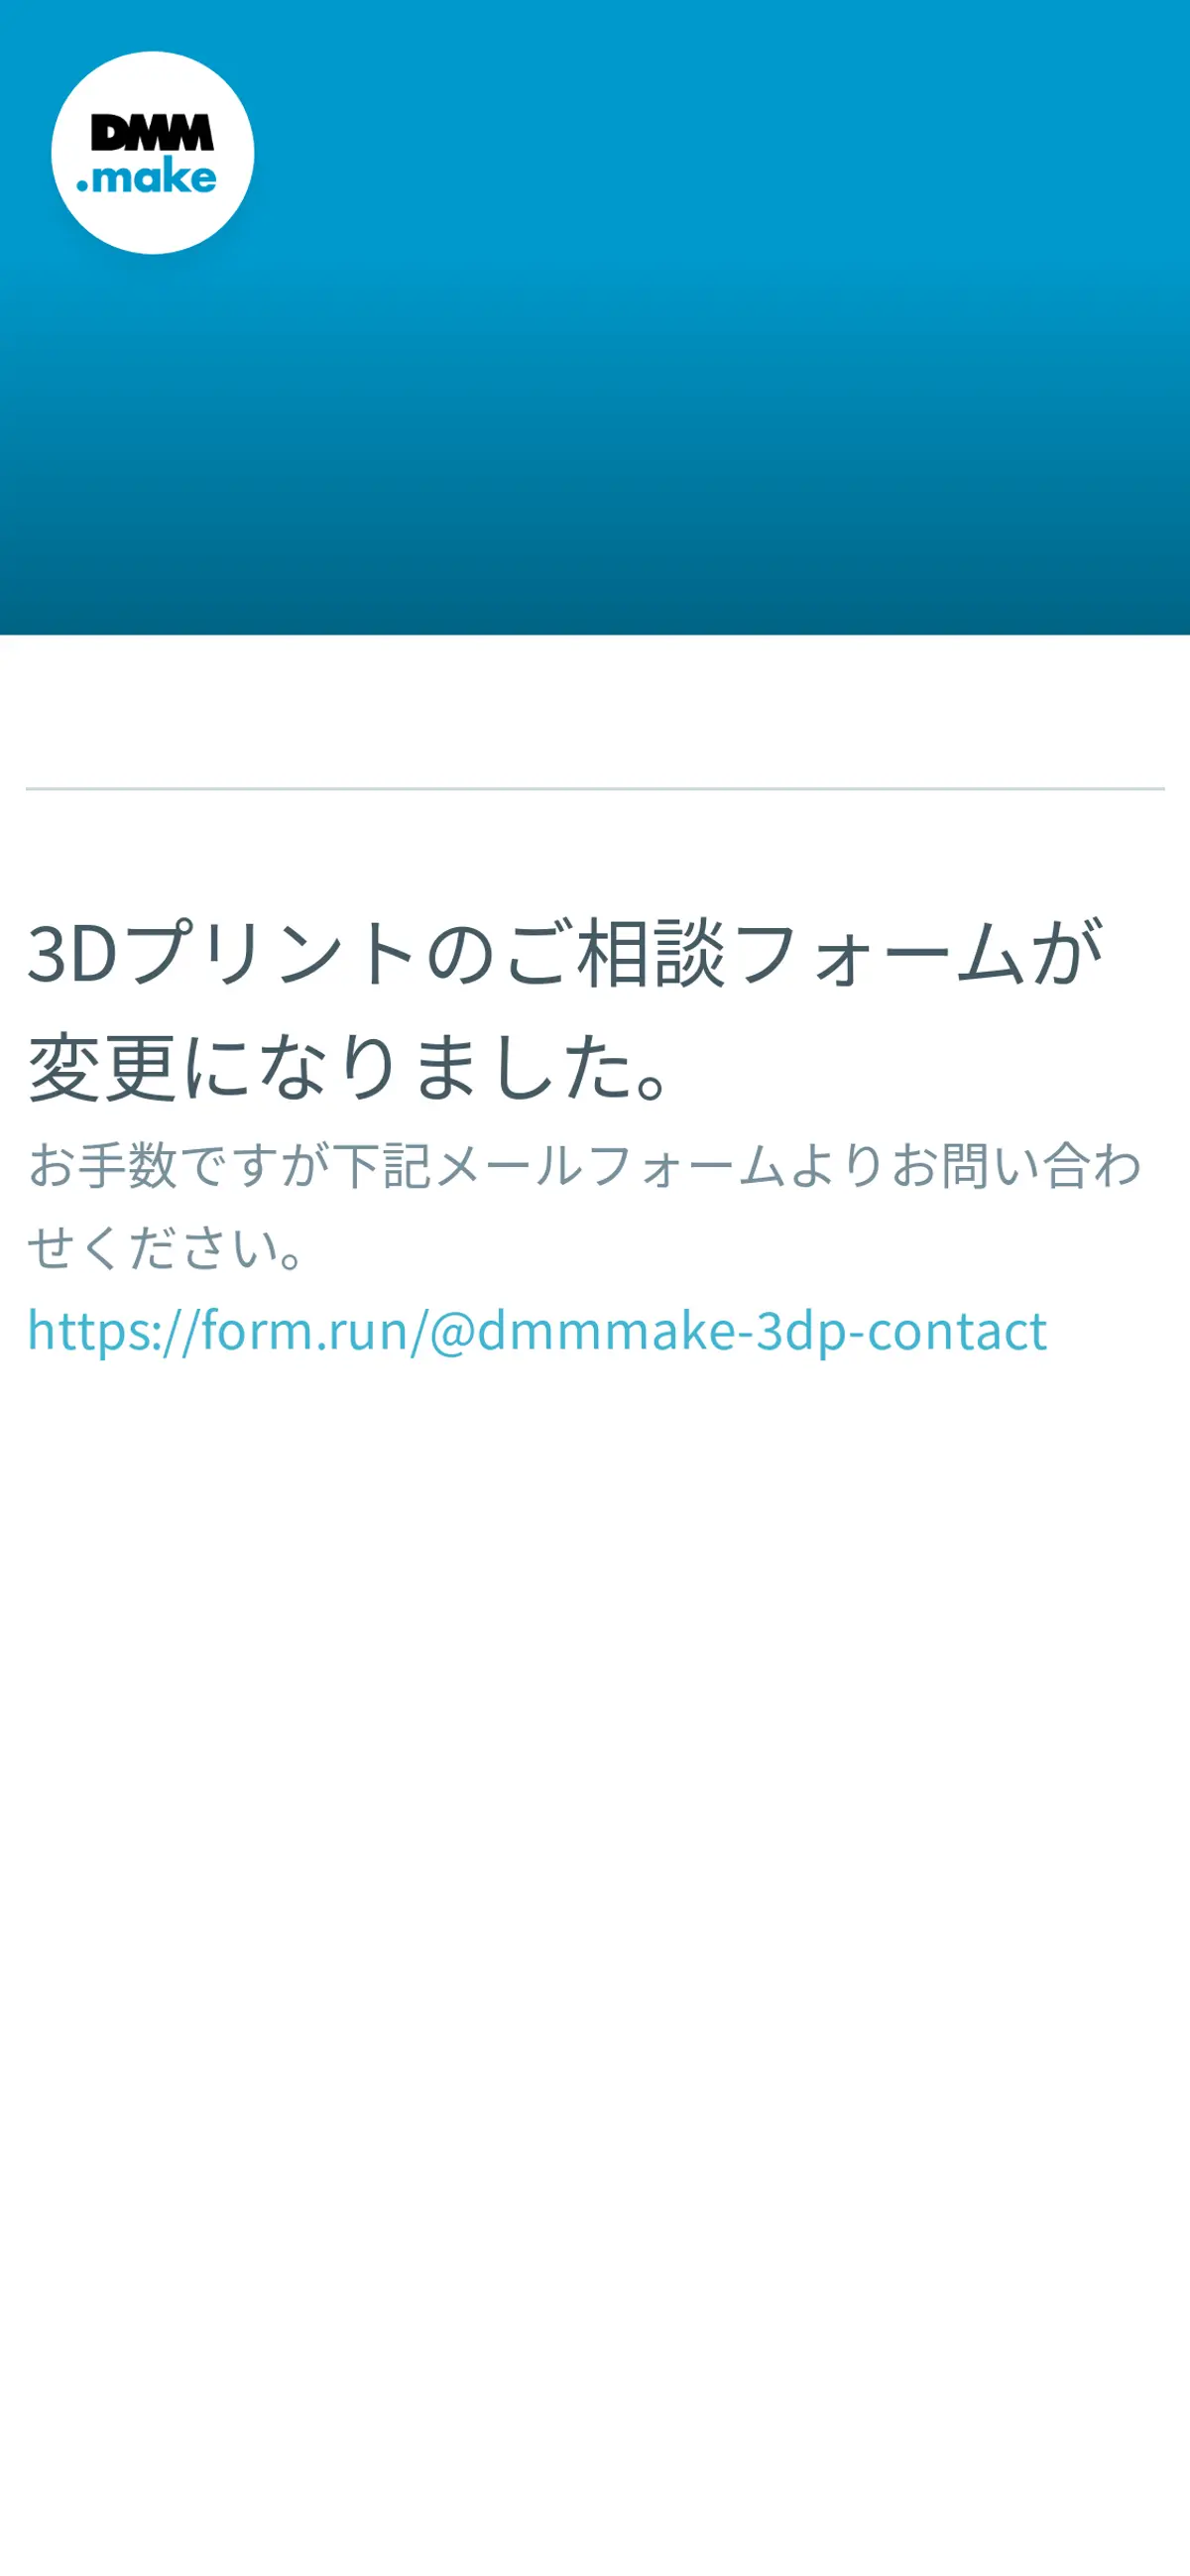 キャプチャ画面 会社名:DMM.com Groupプロジェクト名:DMM.make 3Dプリント 画面名:フォーム入力 デバイス名:SPカテゴリ:WEB・インターネットタグ:SP,フォーム入力